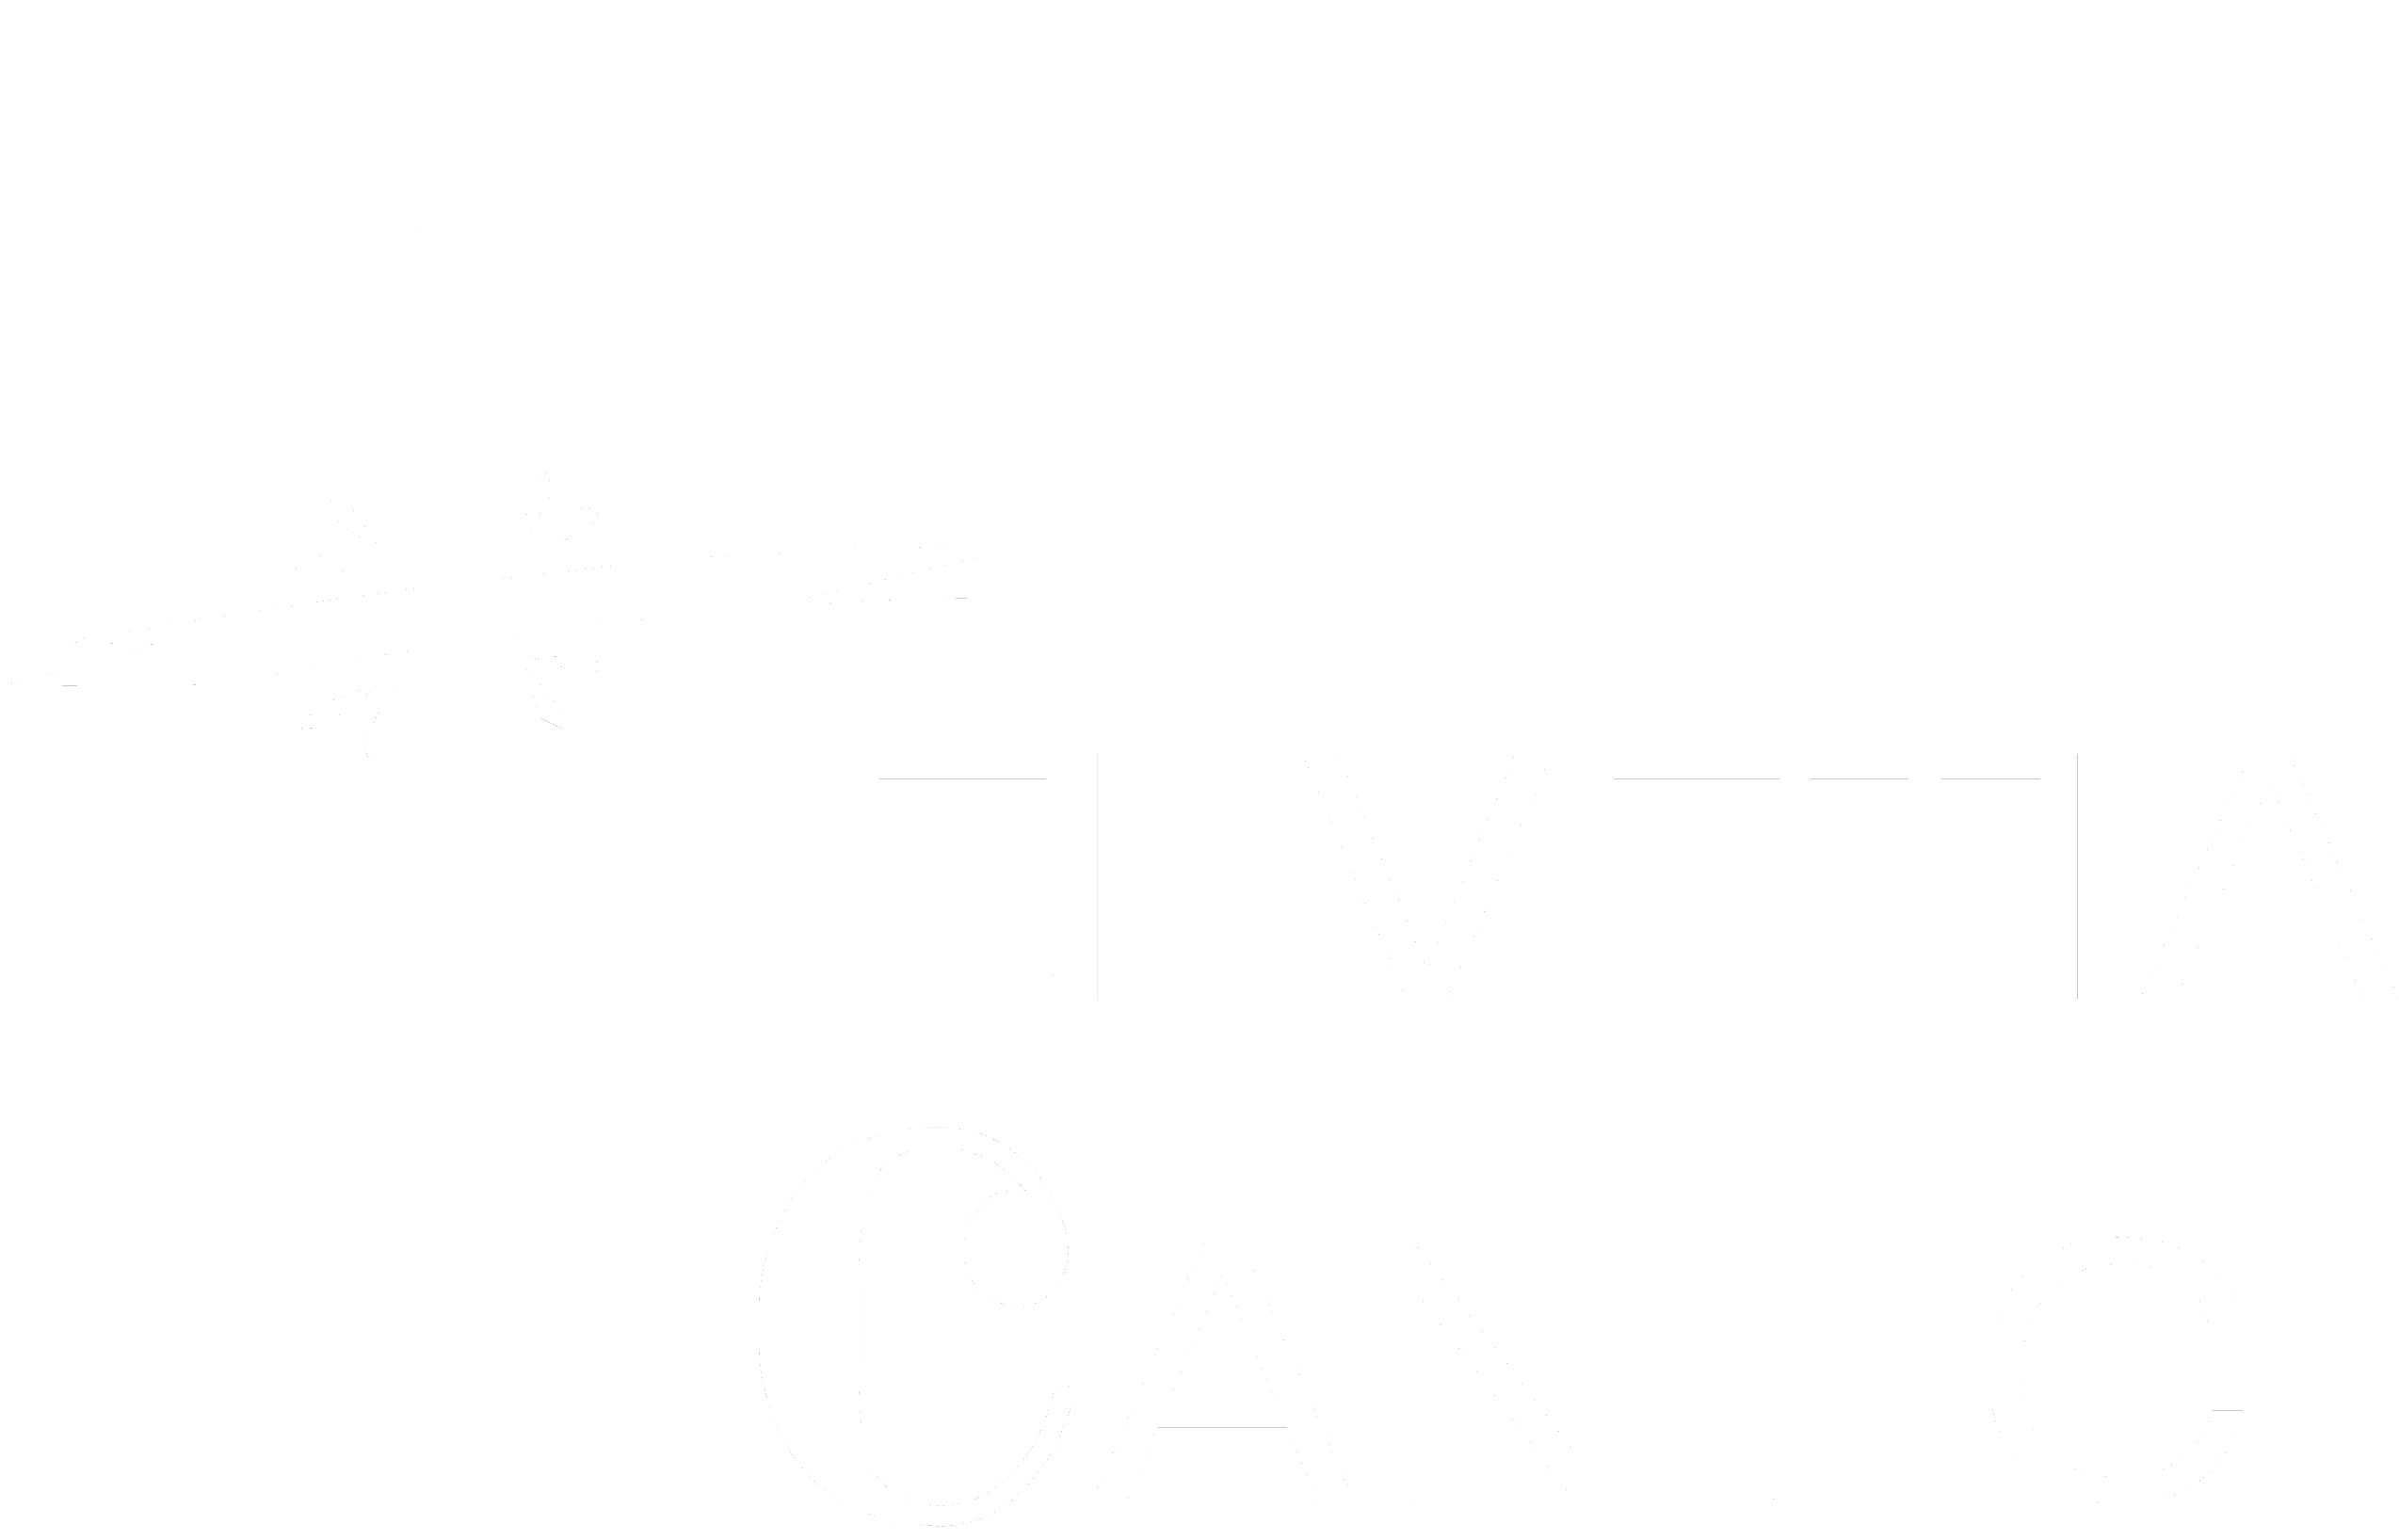 Helvetia Cantic